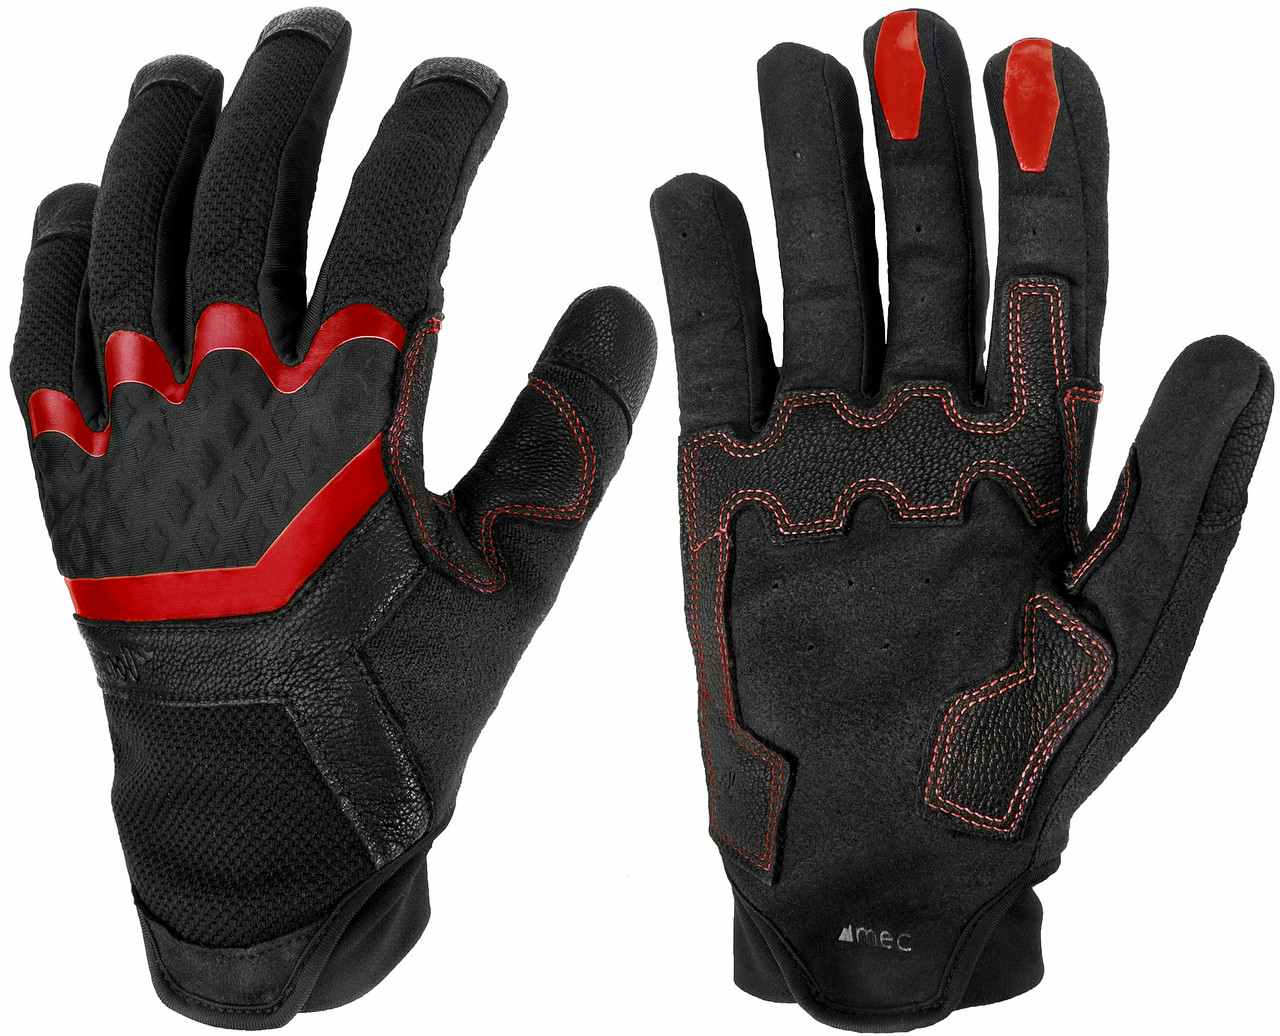 The Don Full Finger Gloves Black/Brick